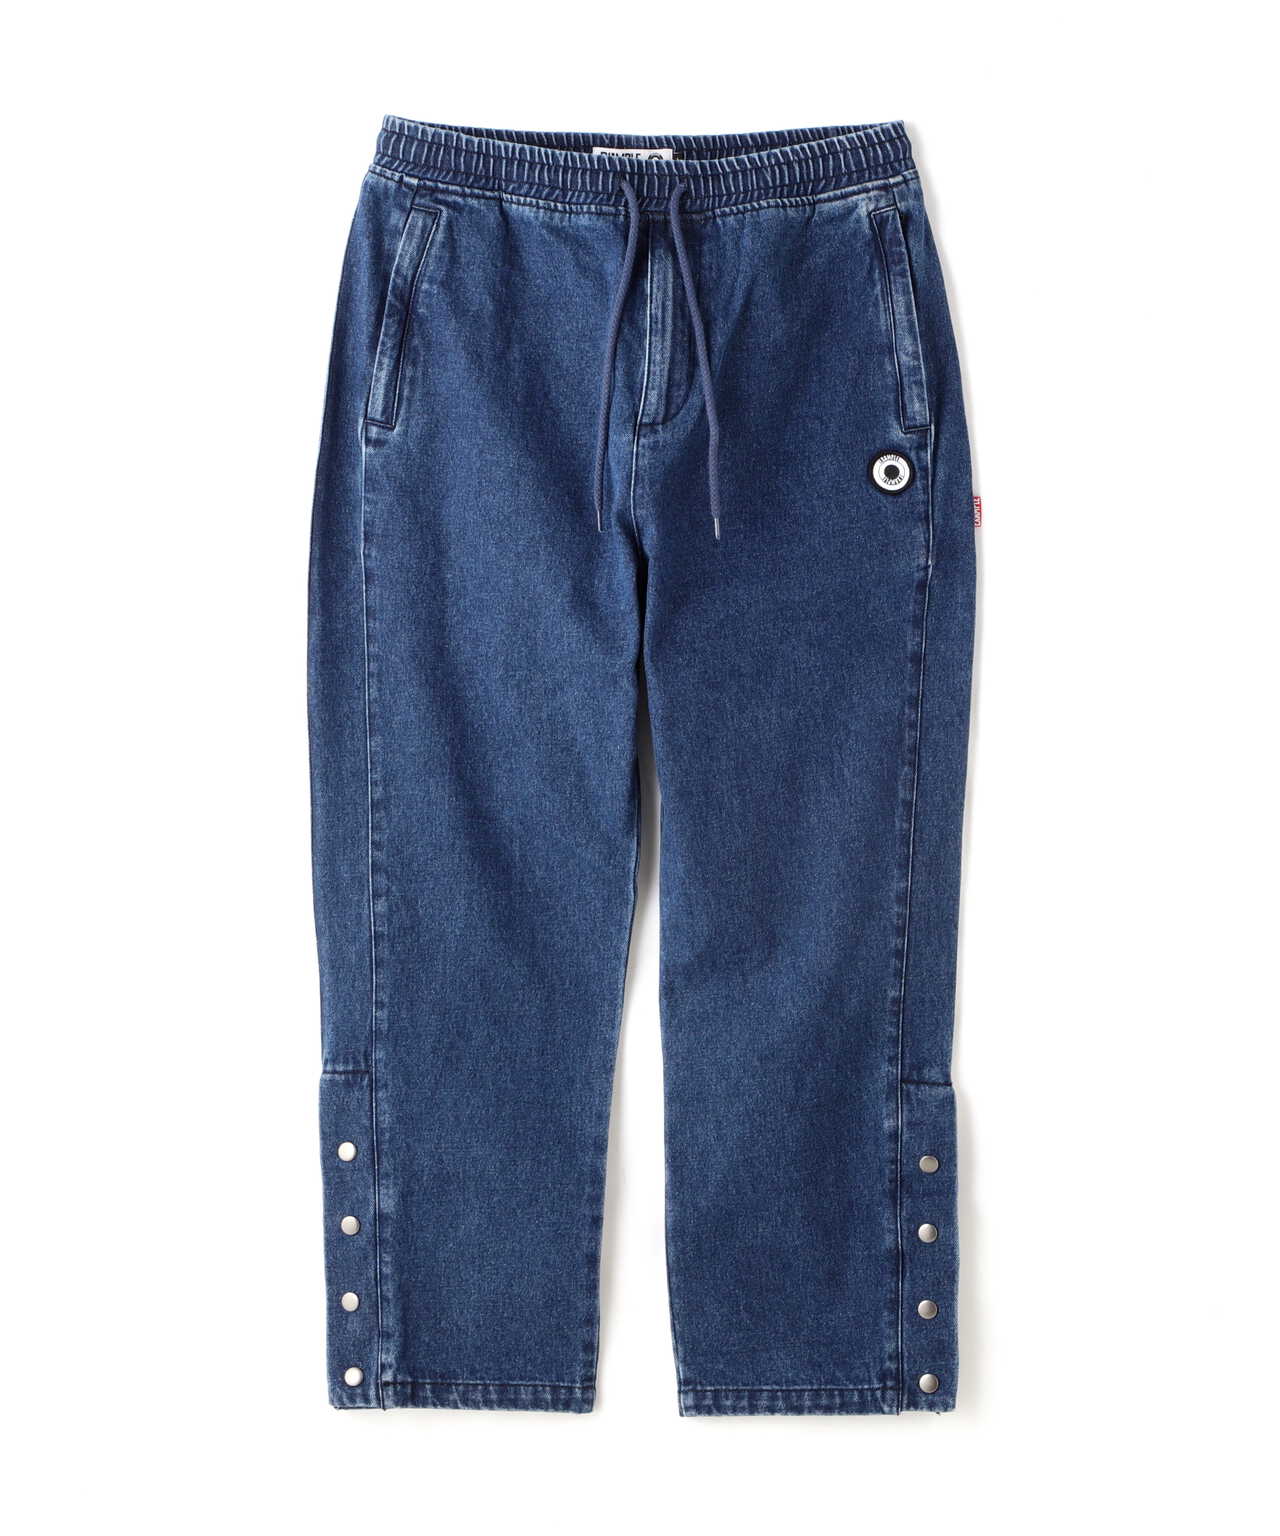 【超人気SALE】EXAMPLE DENIM TRACK PANTS パンツ